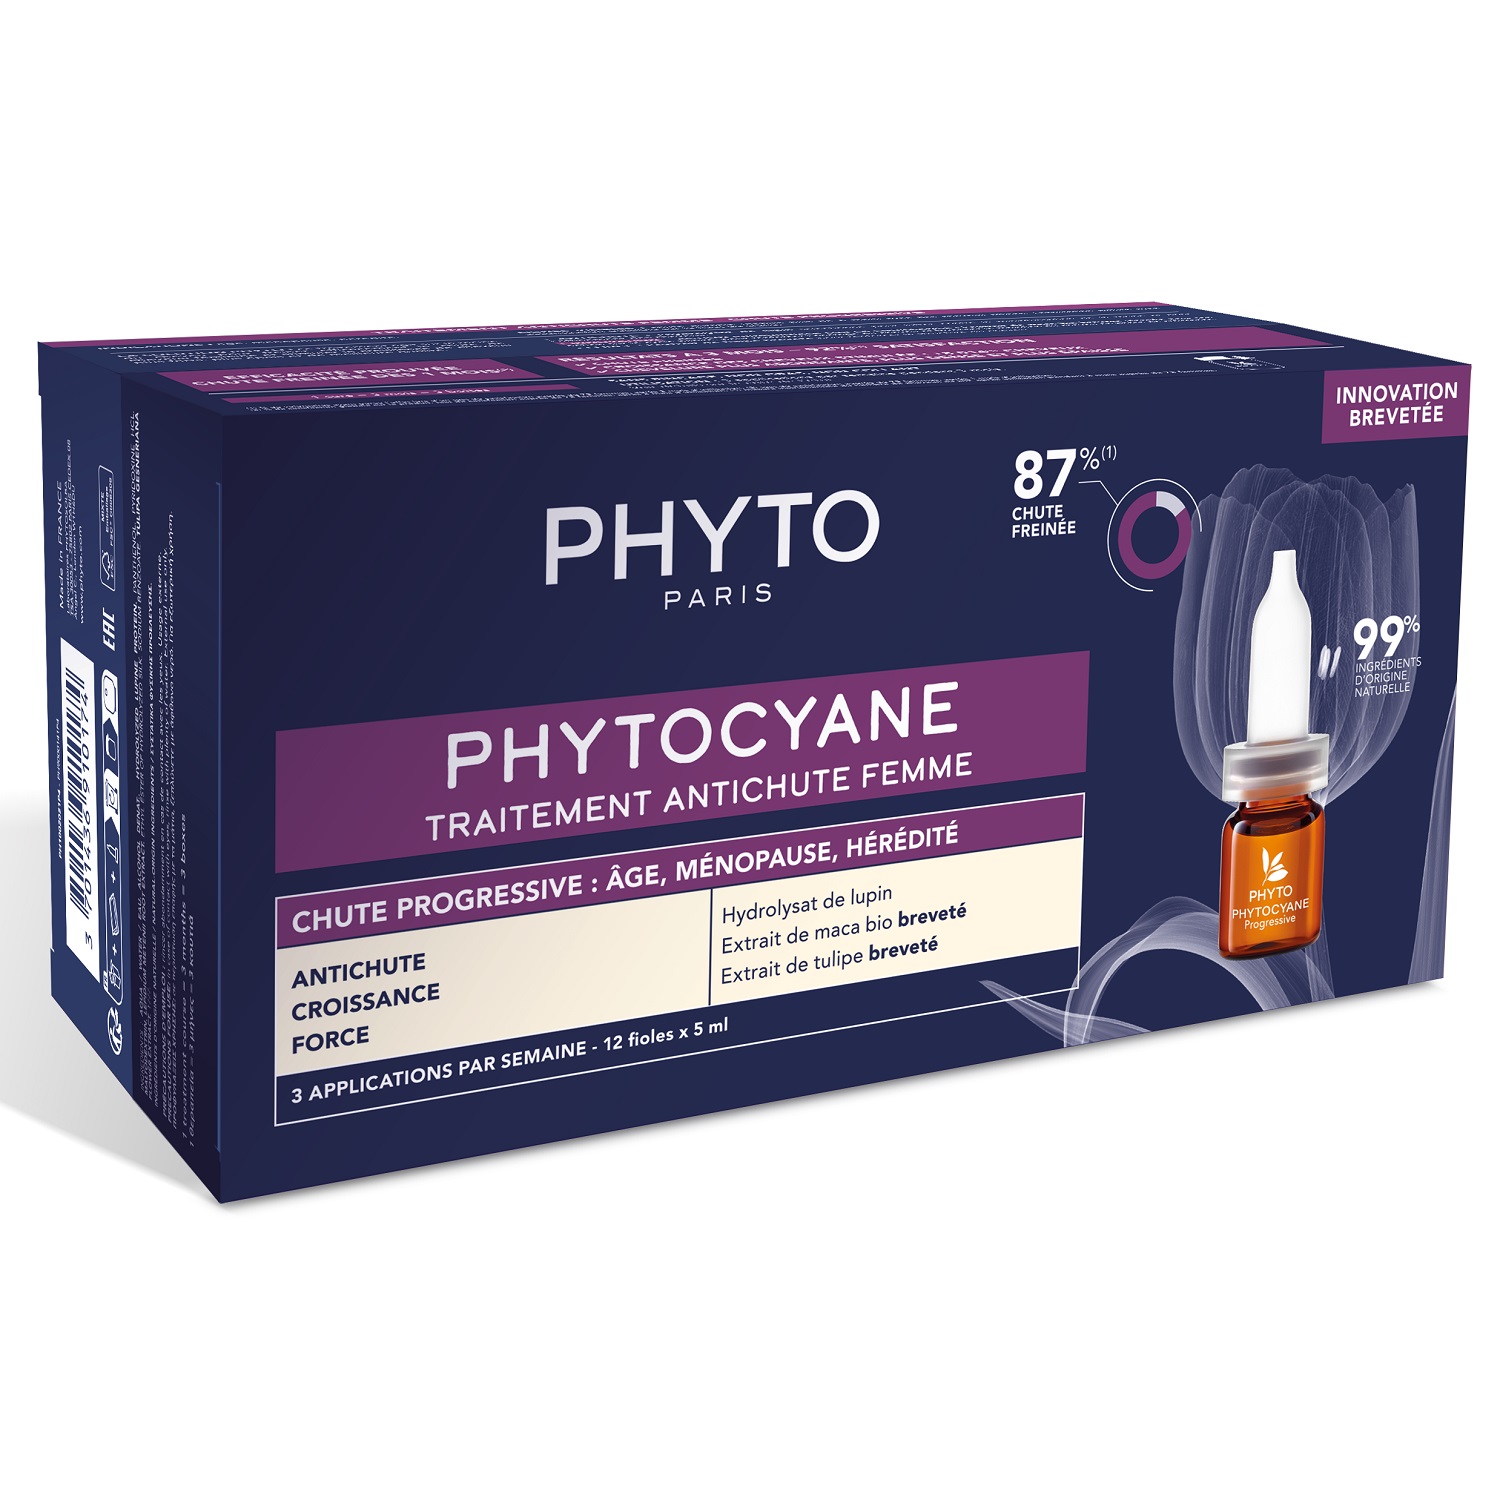 Phyto Сыворотка против выпадения волос для женщин, 12 флаконов х 5 мл (Phyto, Phytocyane) цена и фото